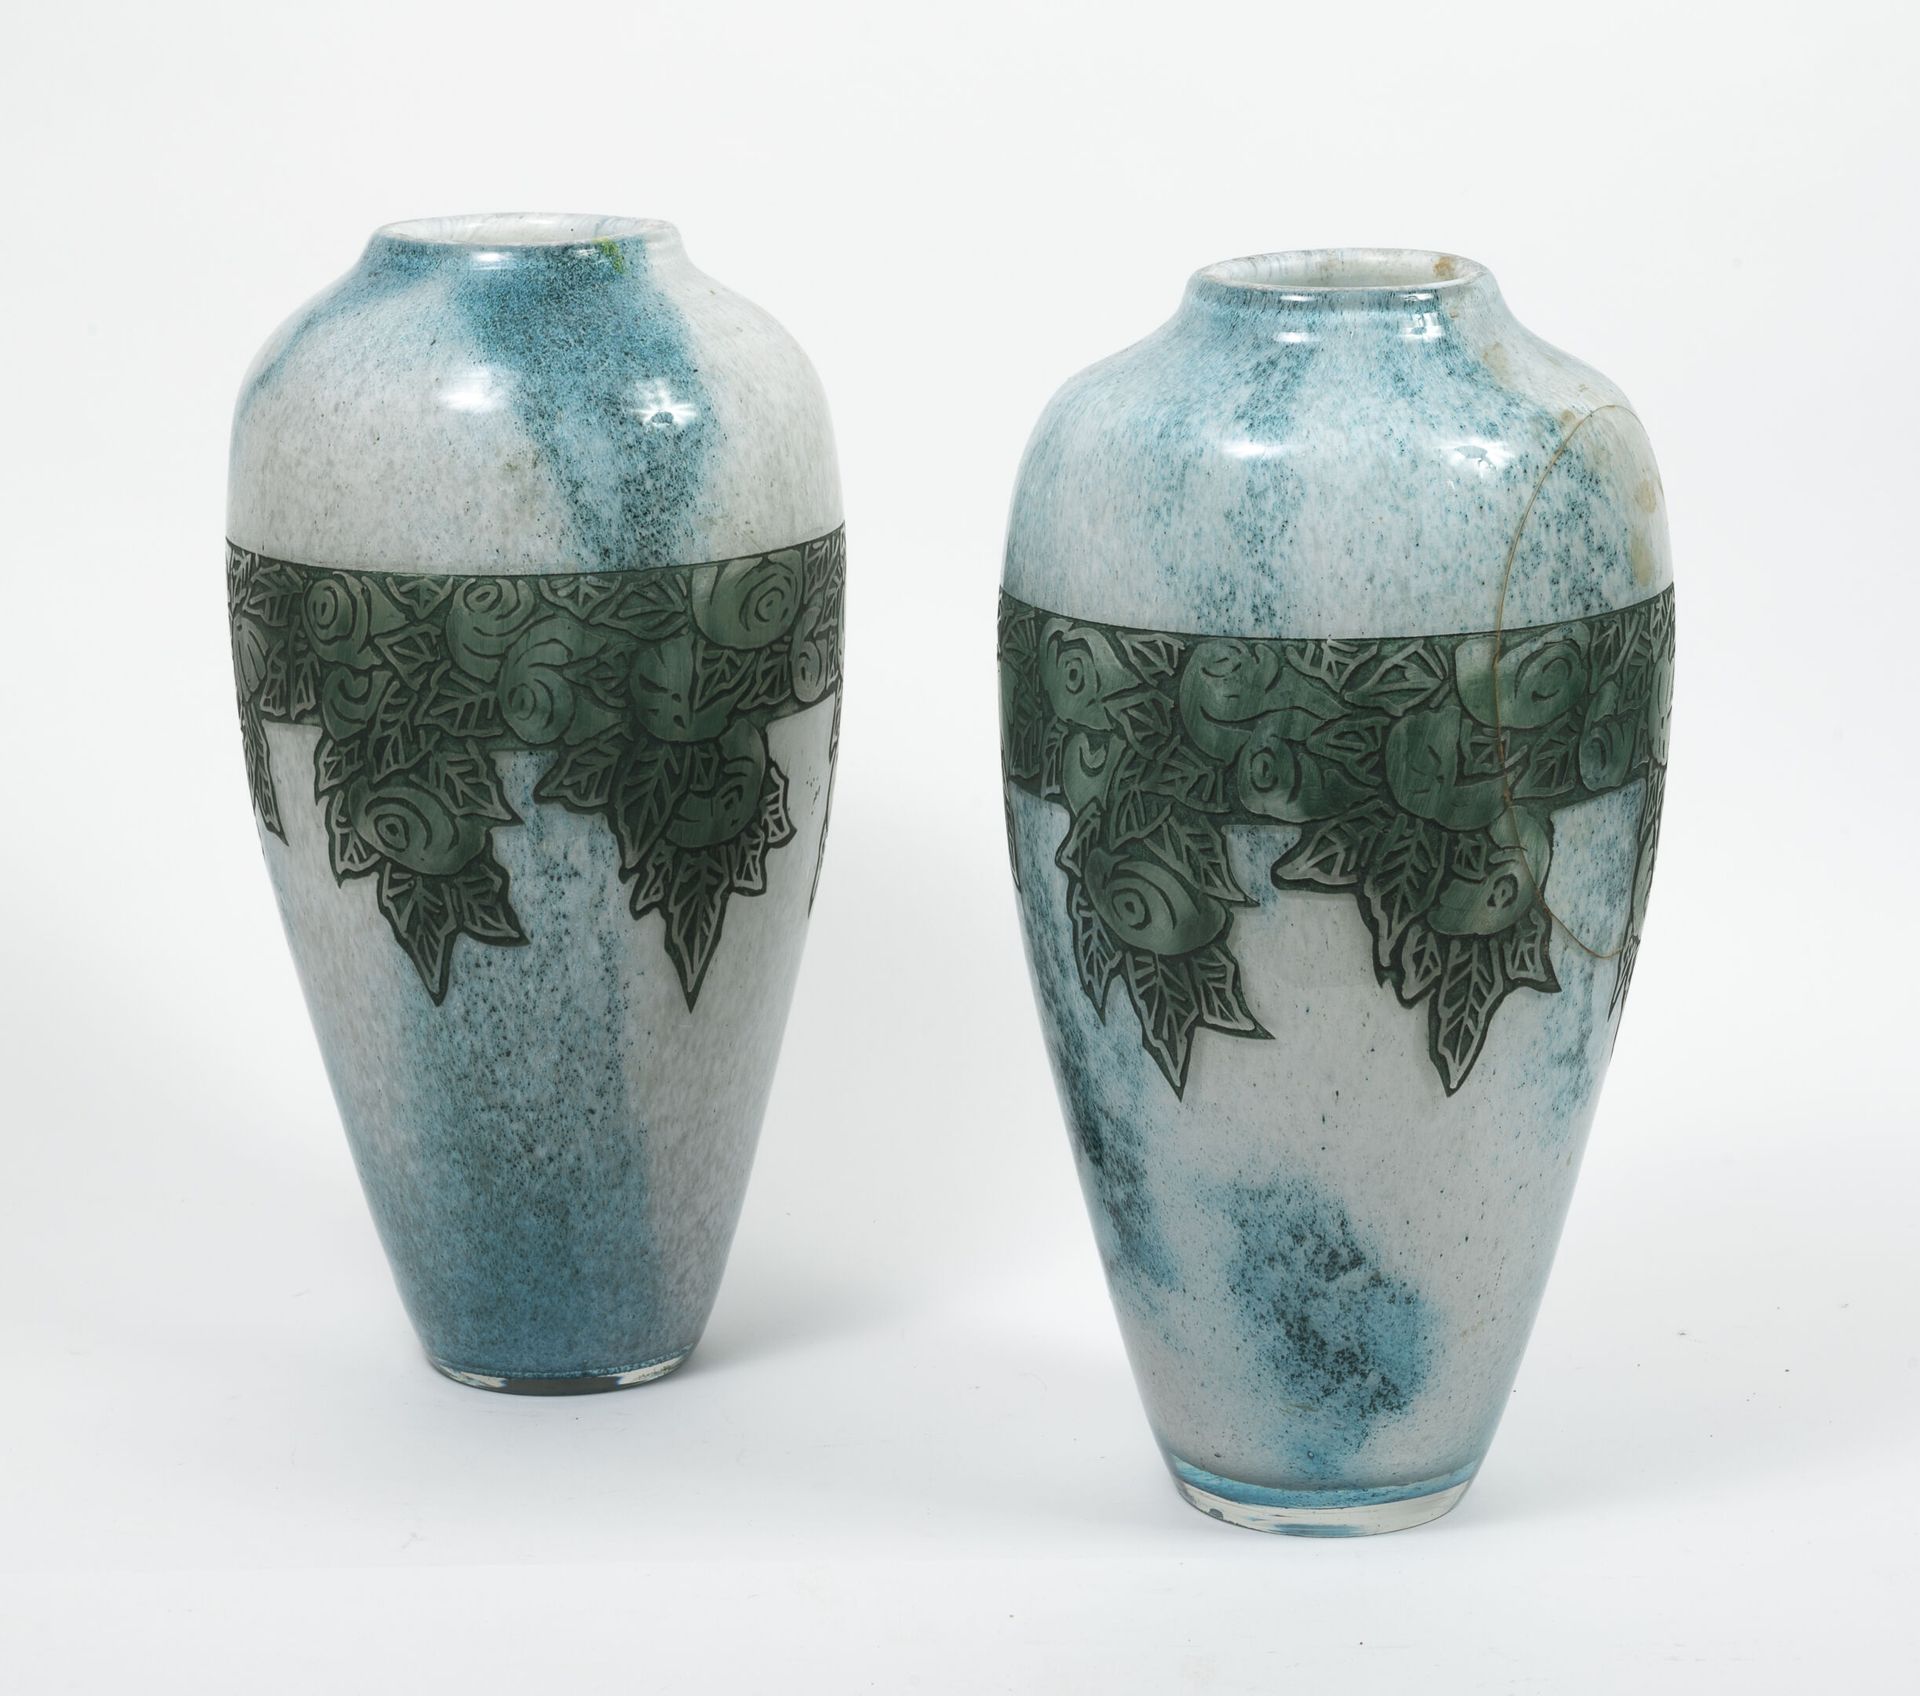 Etablissements LEGRAS 一对肩部膨胀的圆锥形花瓶，约1930年。

白色和蓝色大理石花纹的玻璃样板，有酸蚀浮雕的玫瑰花纹装饰。

签名。

&hellip;